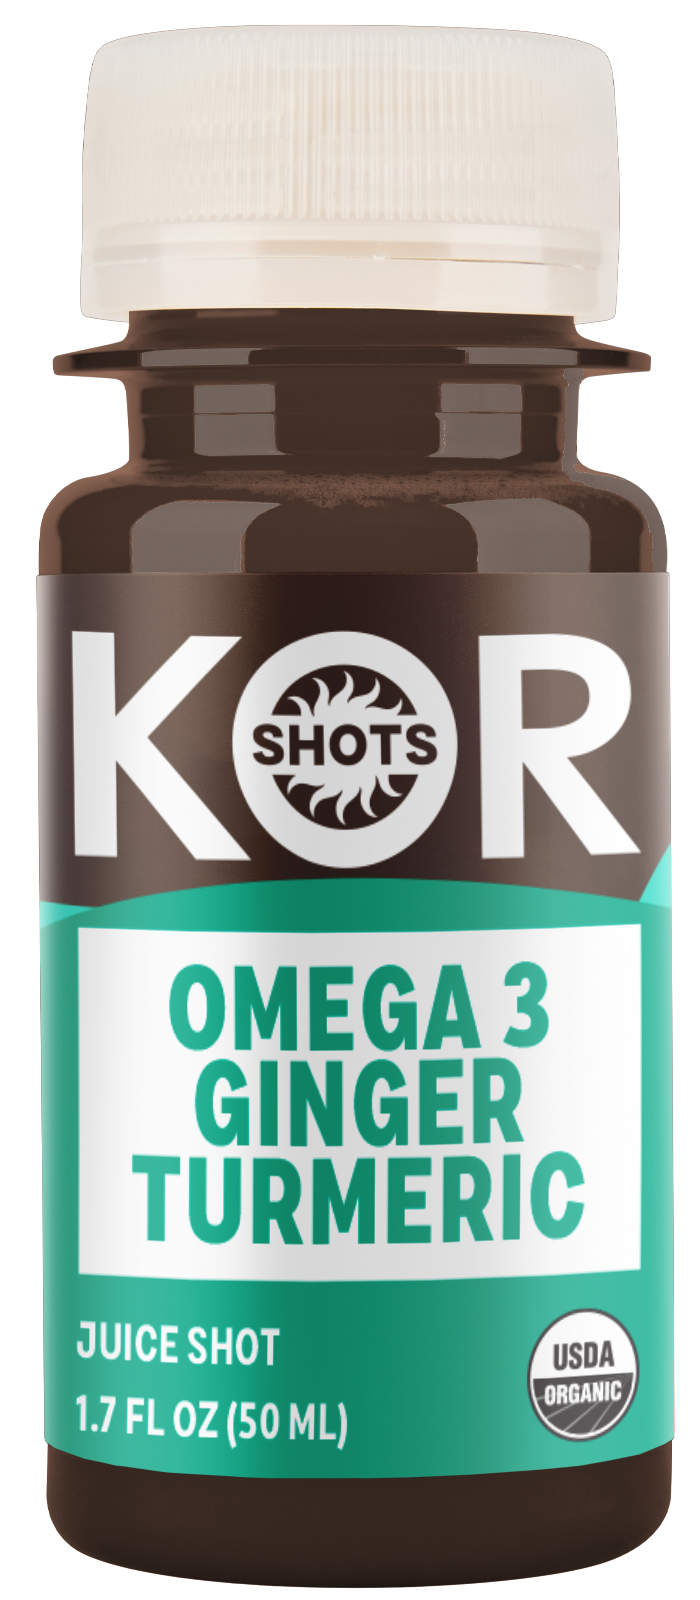 Omega 3-Ginger-Turmeric